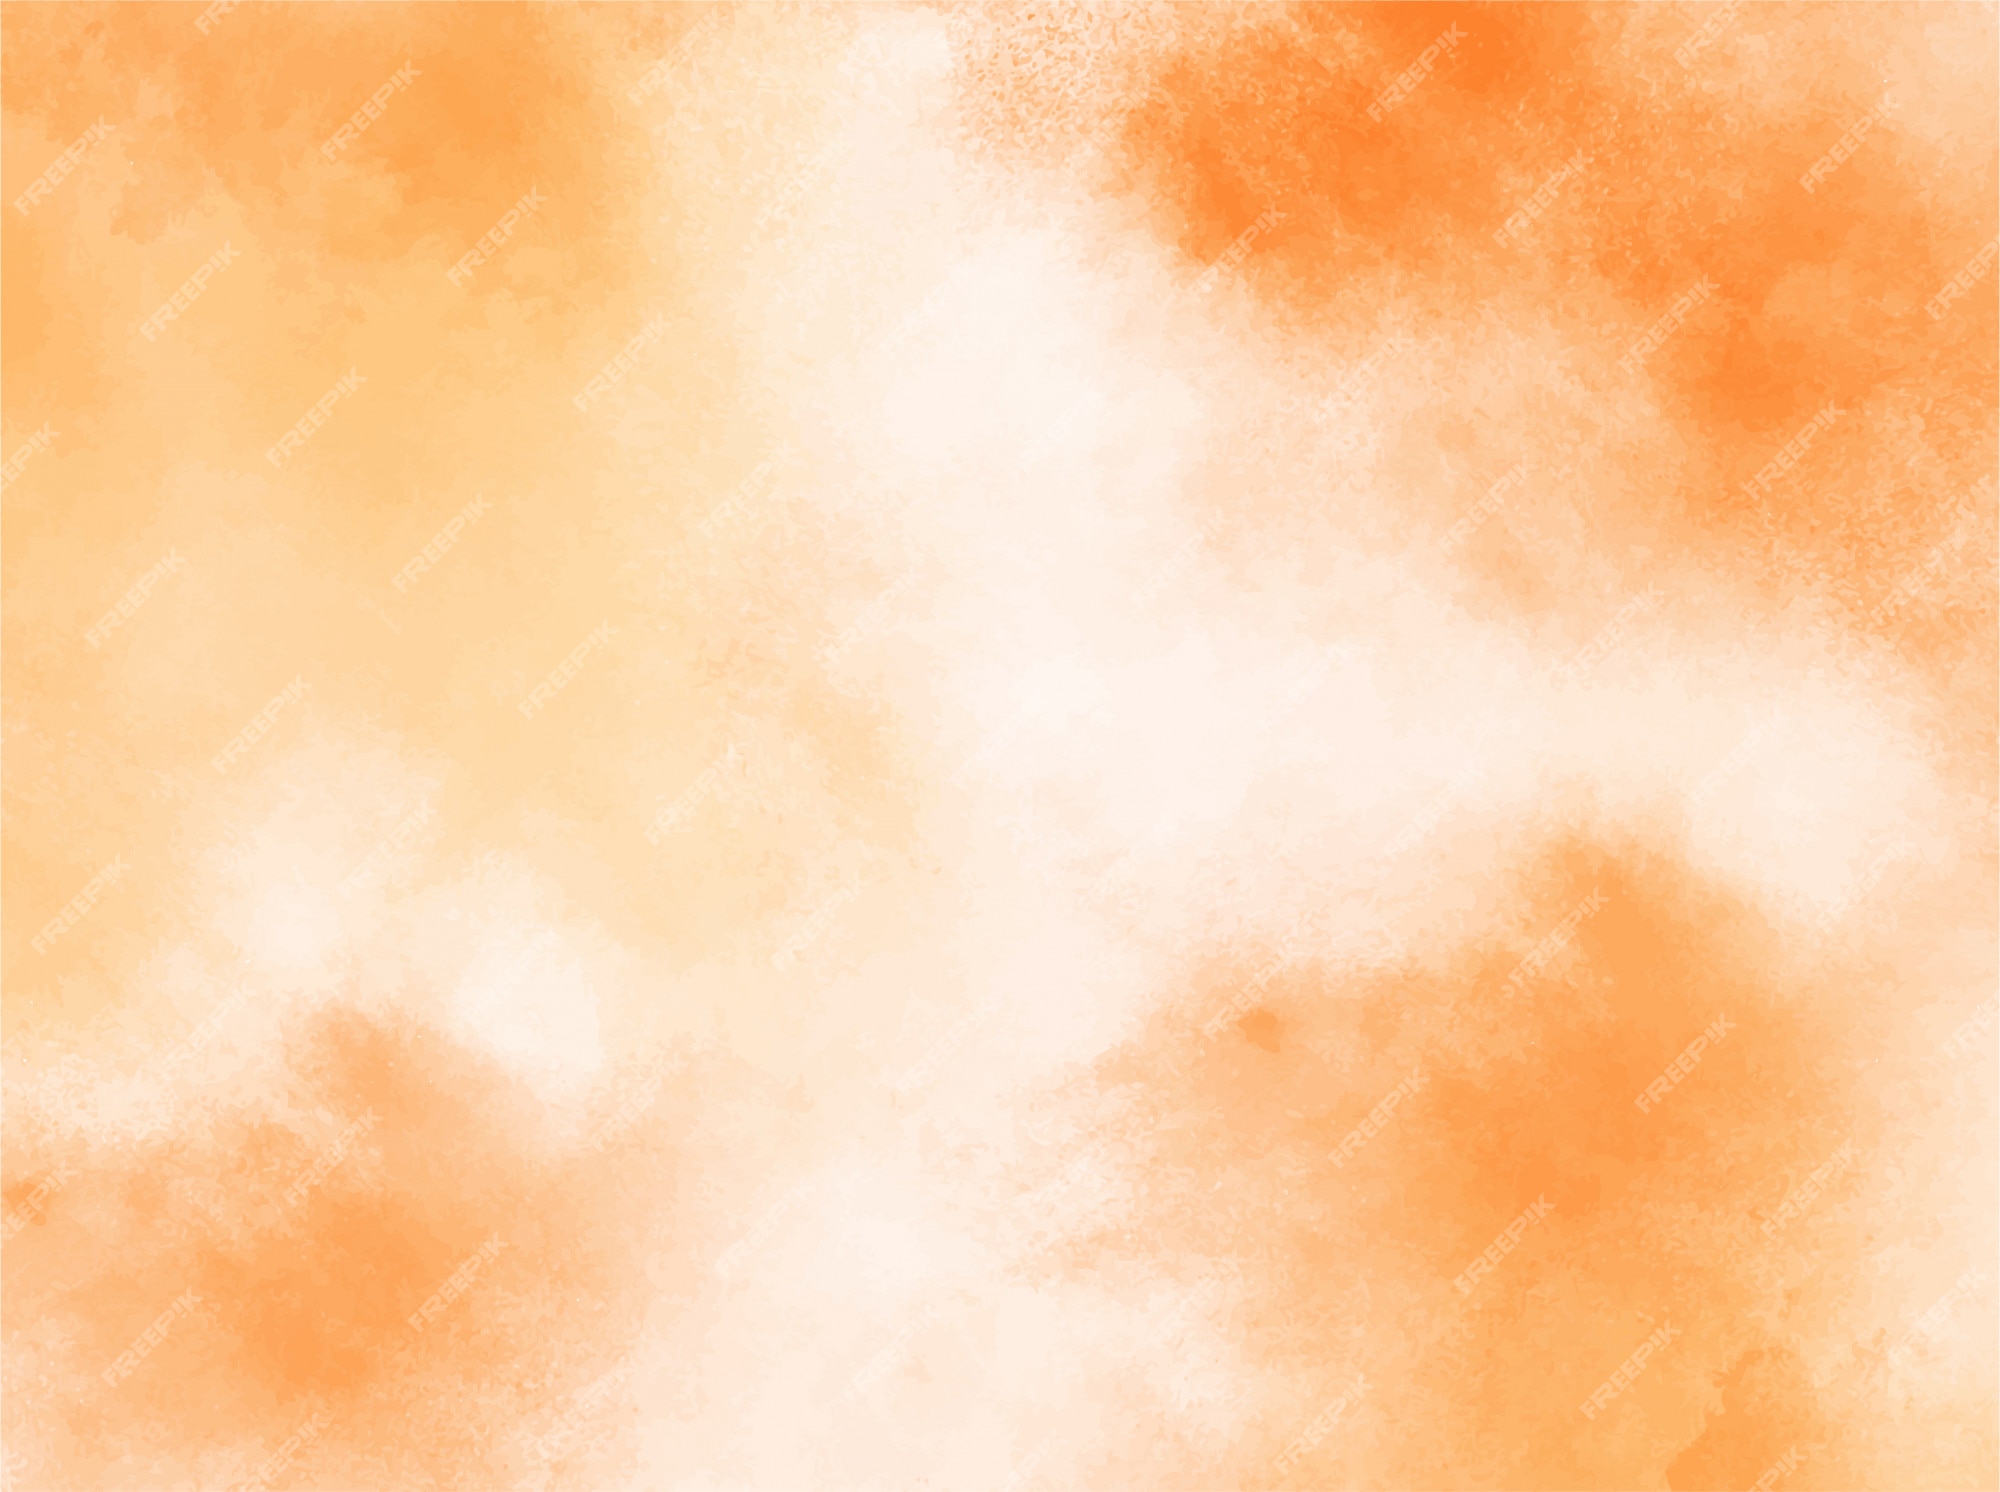 Details 100 orange pastel background